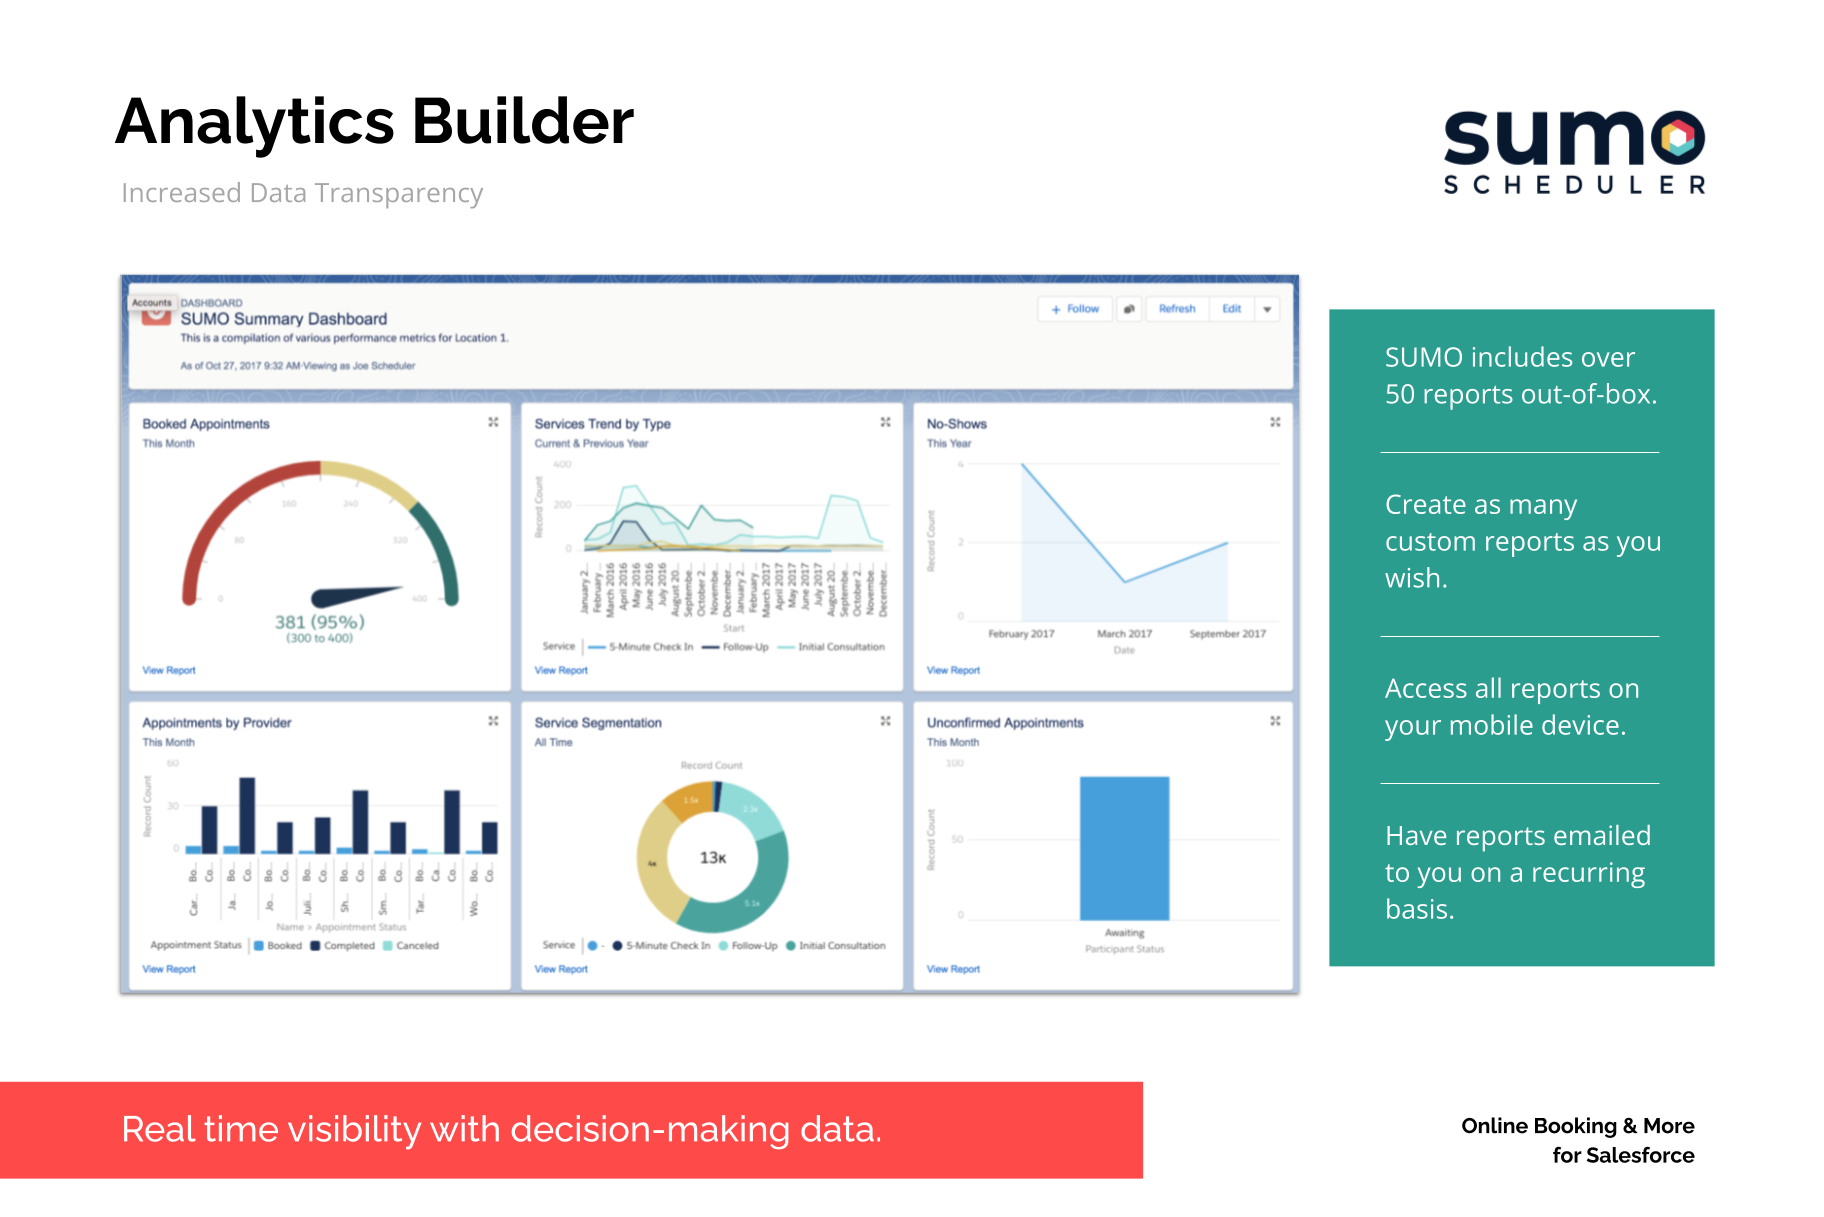 SUMO Scheduler analytics builder